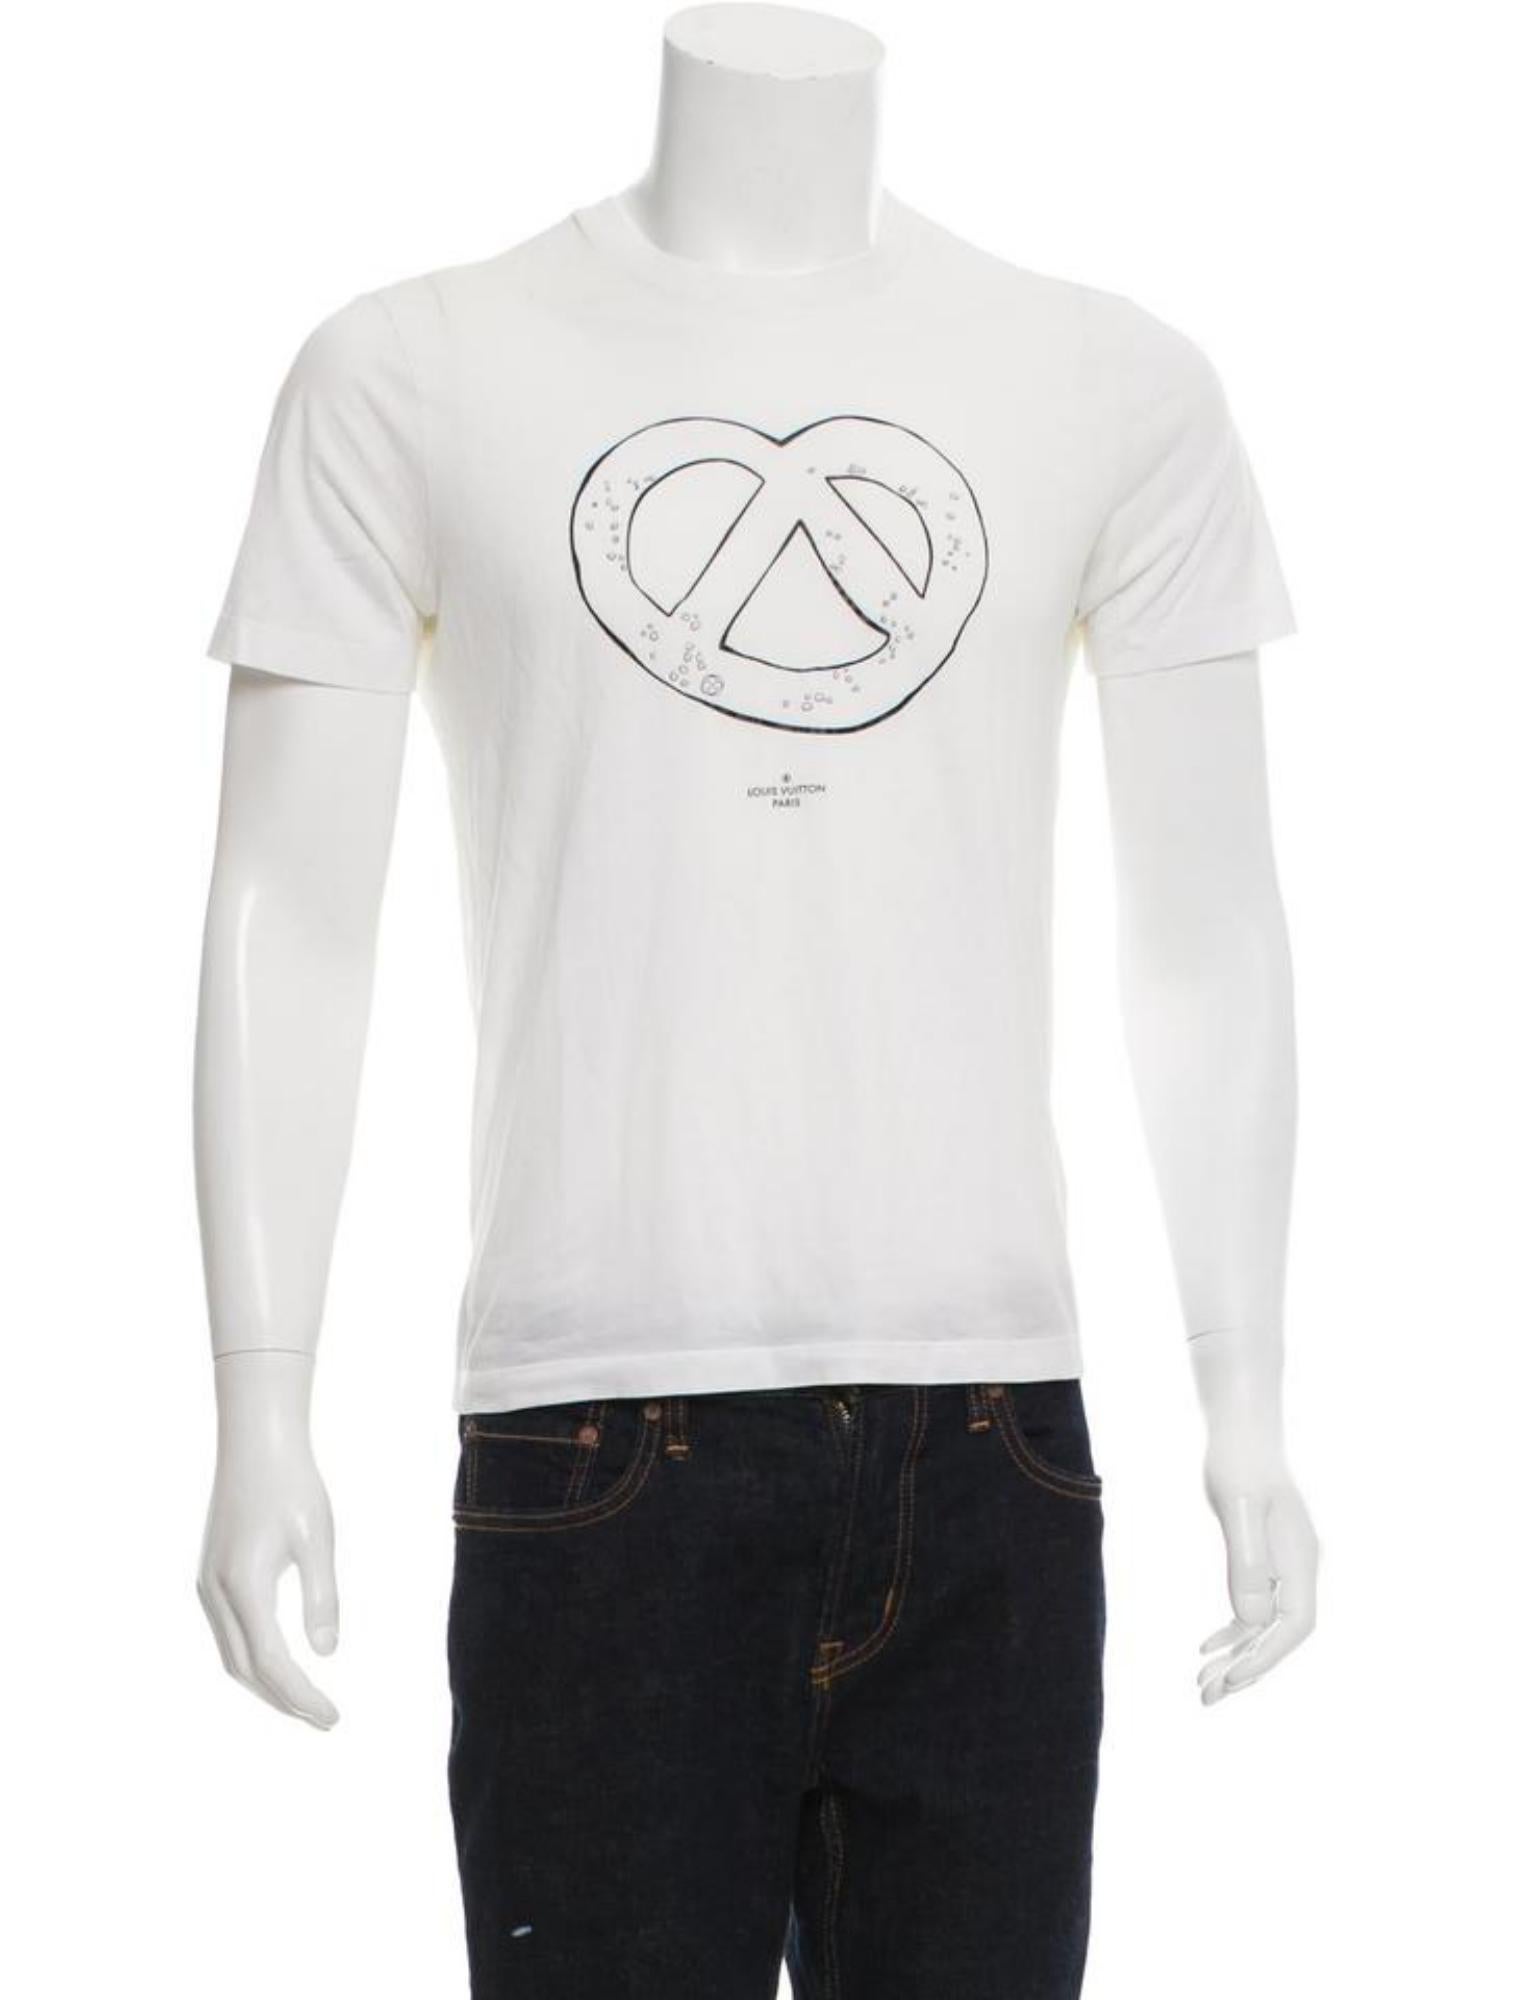 Louis Vuitton Men's XXXL Limited LV Salt Pretzel T-Shirt 120lv29
Made In: Italy
Measurements: Length:  23